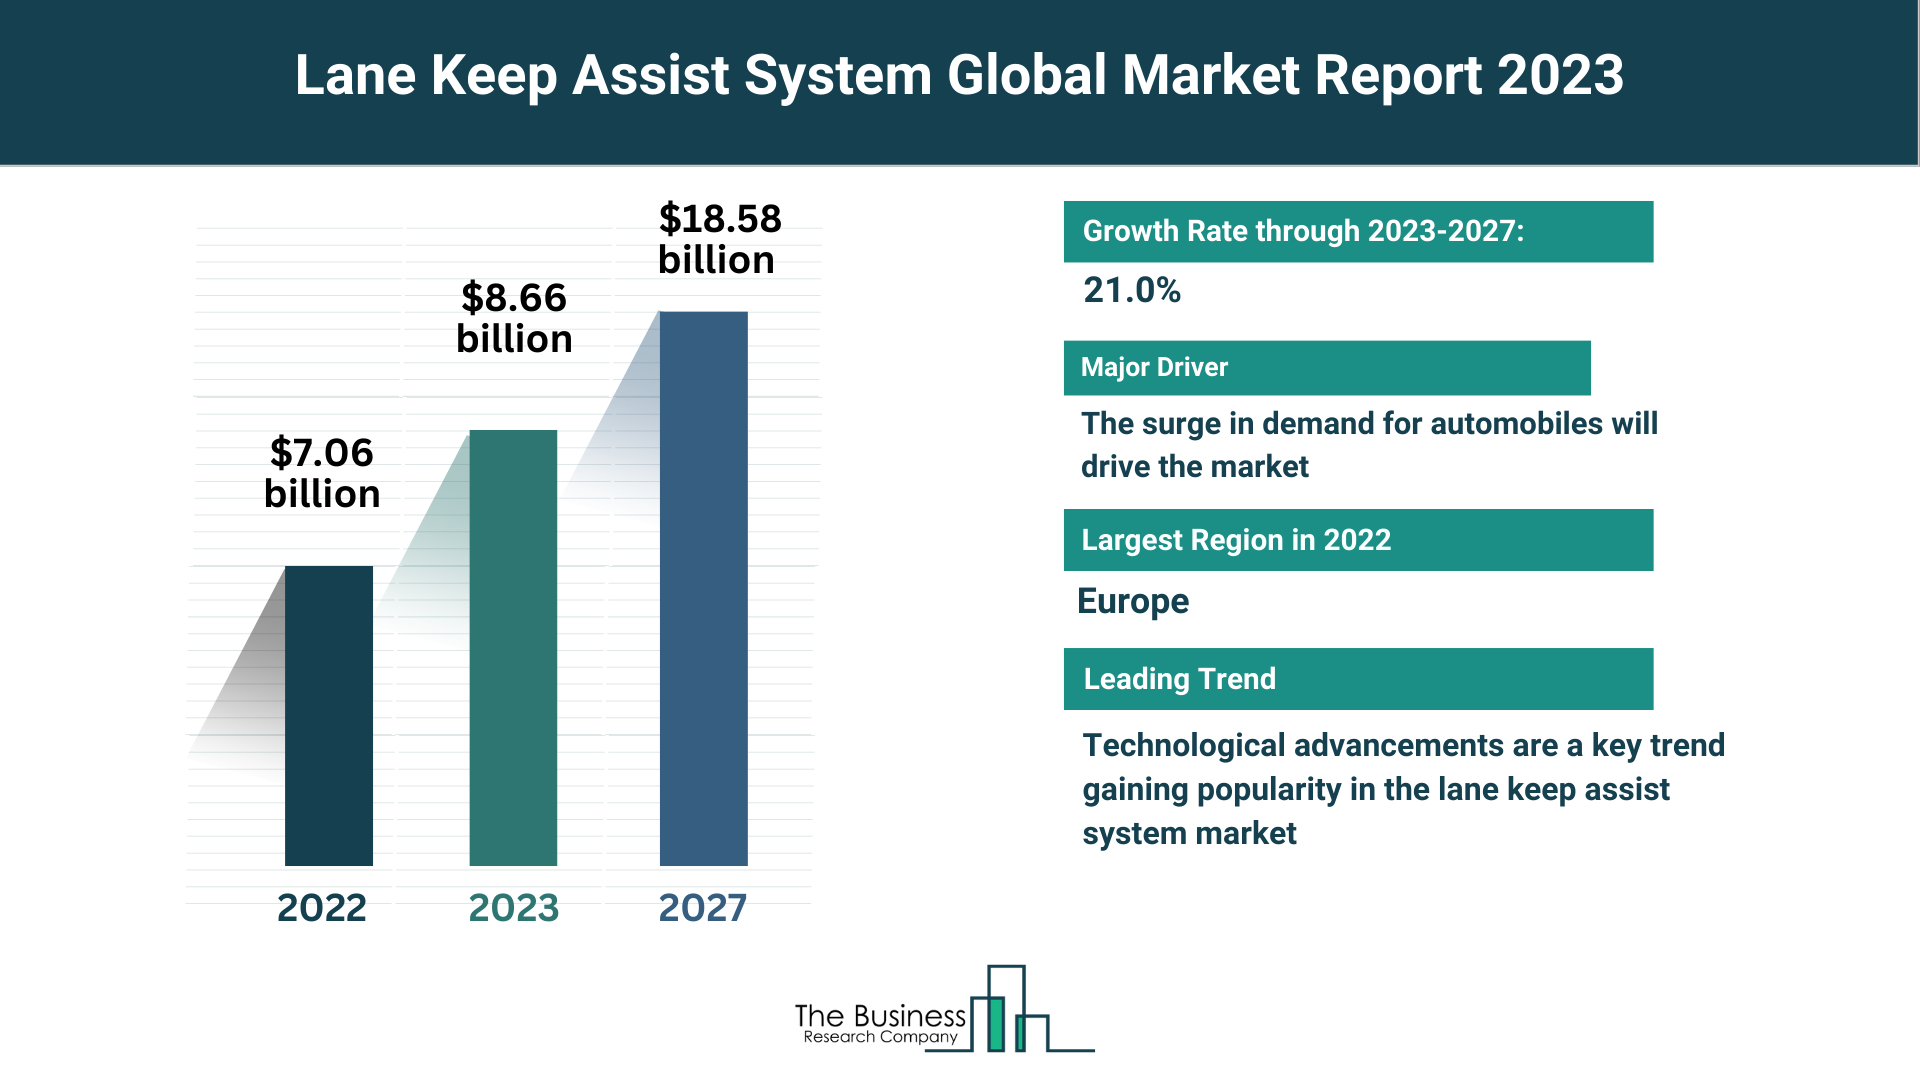 Global Lane Keep Assist System Market